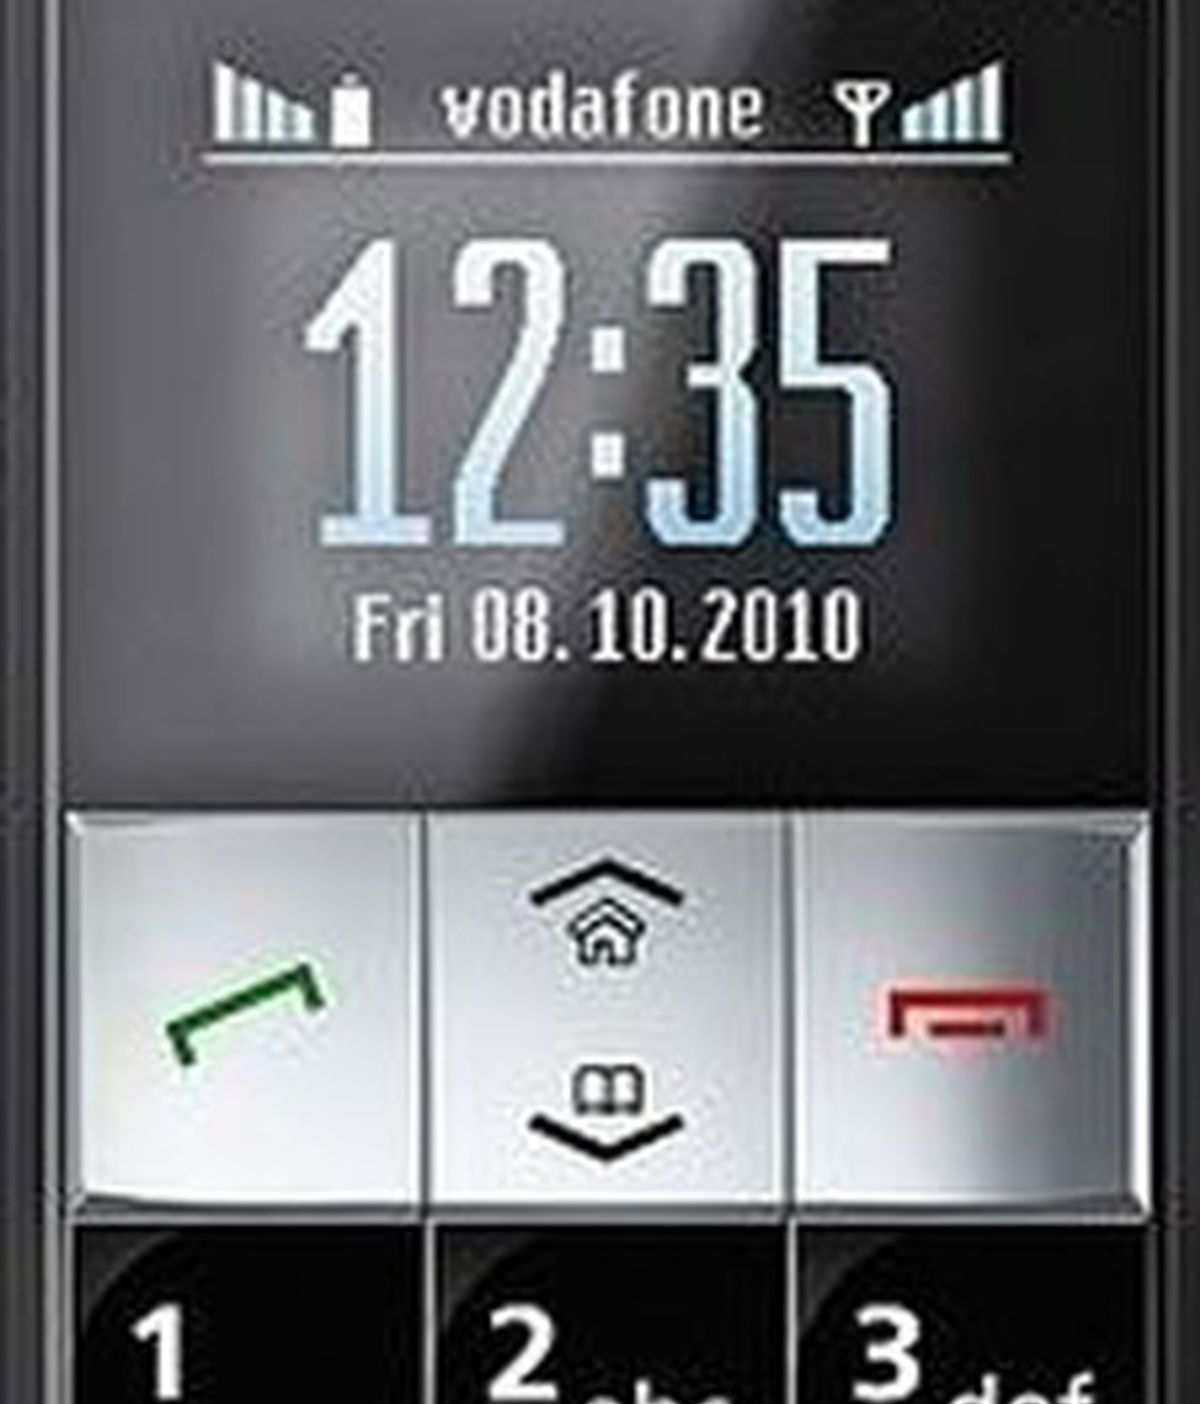 El teléfono de Vodafone es muy fácil de usar. Foto: Vodafone